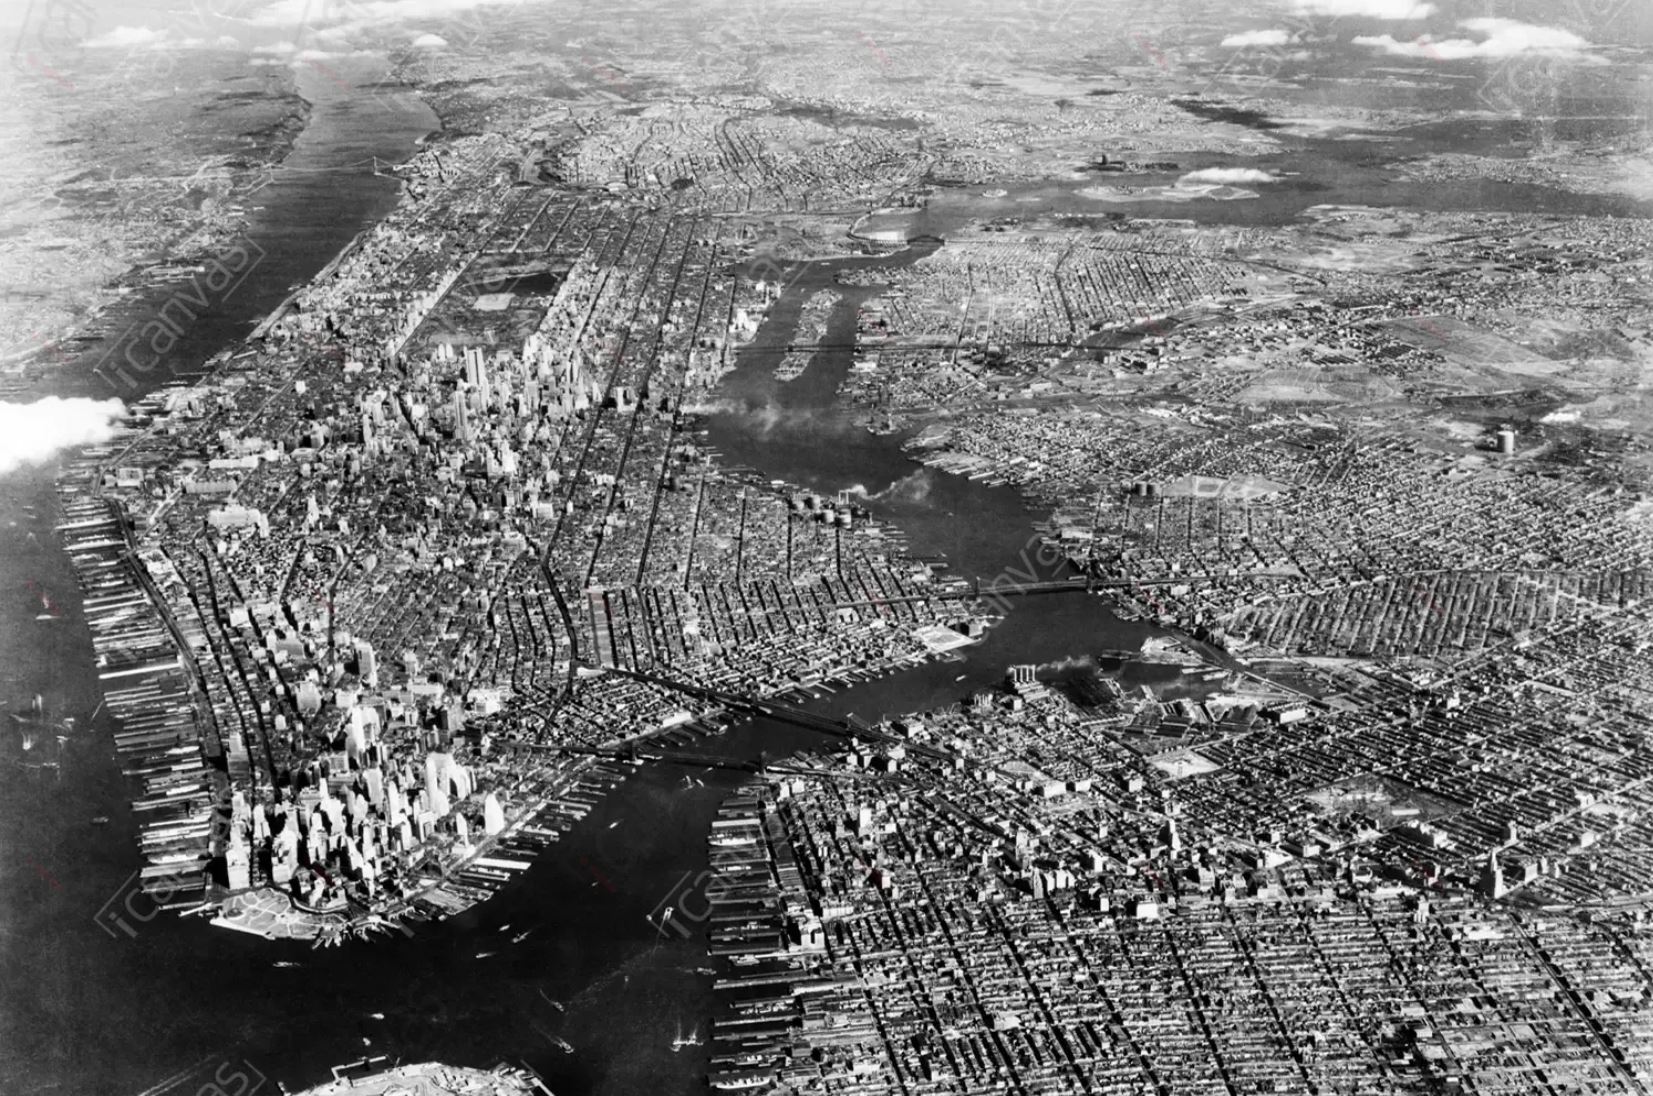 Minidoku aus dem Jahr 1947 – So wurden die 5 Boroughs (Bezirke) zur vereinten Megastadt New York